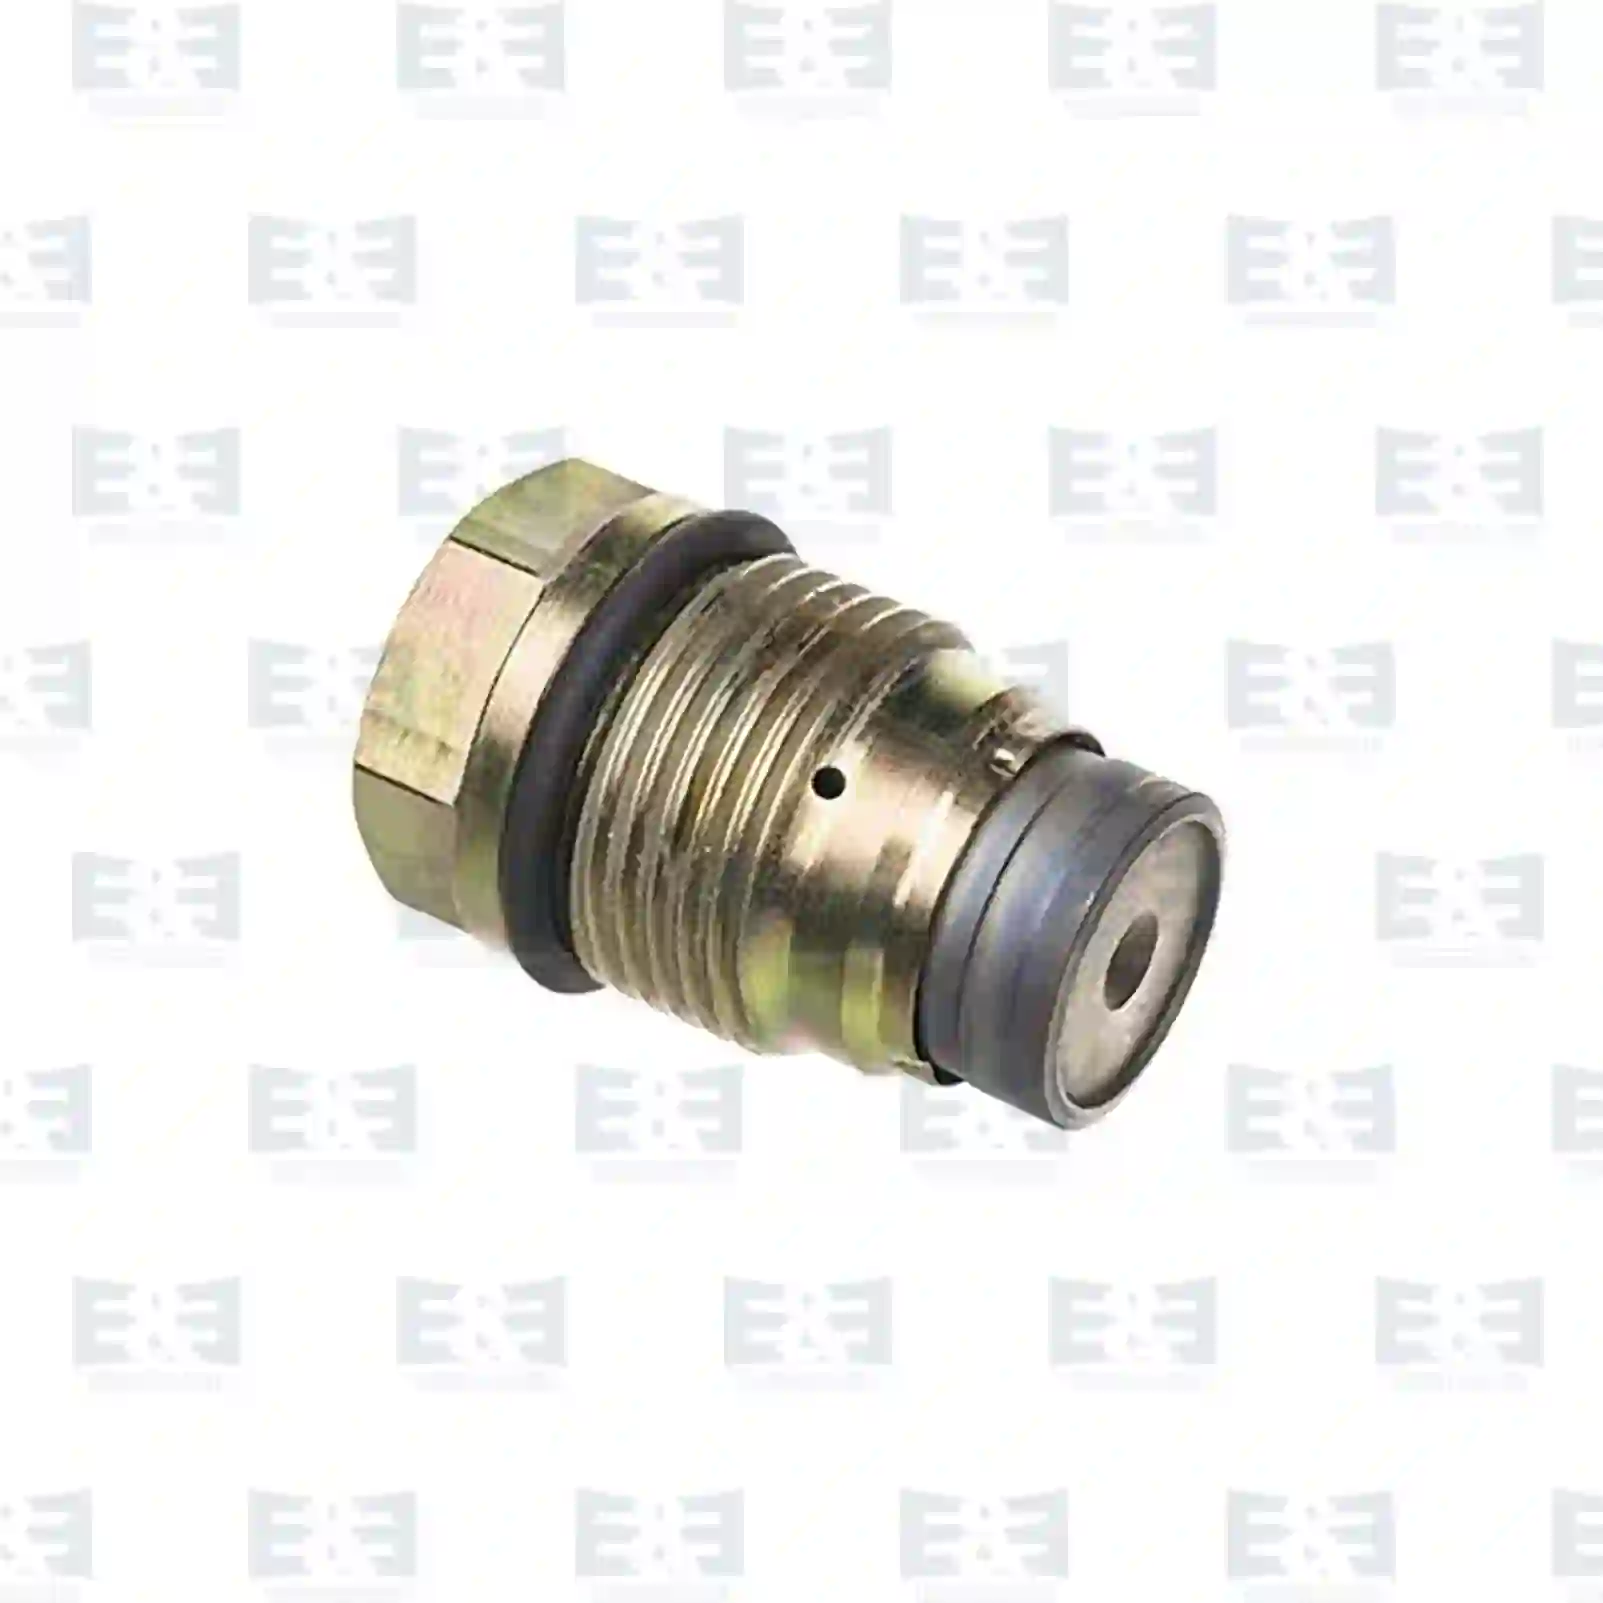 Pressure limiting valve, Common Rail, 2E2287805, 42562997, 504088436, 51103040278, 51103040291, 7420793590, 20793590, 3588337, 3884350, 07W133035, ZG10492-0008 ||  2E2287805 E&E Truck Spare Parts | Truck Spare Parts, Auotomotive Spare Parts Pressure limiting valve, Common Rail, 2E2287805, 42562997, 504088436, 51103040278, 51103040291, 7420793590, 20793590, 3588337, 3884350, 07W133035, ZG10492-0008 ||  2E2287805 E&E Truck Spare Parts | Truck Spare Parts, Auotomotive Spare Parts